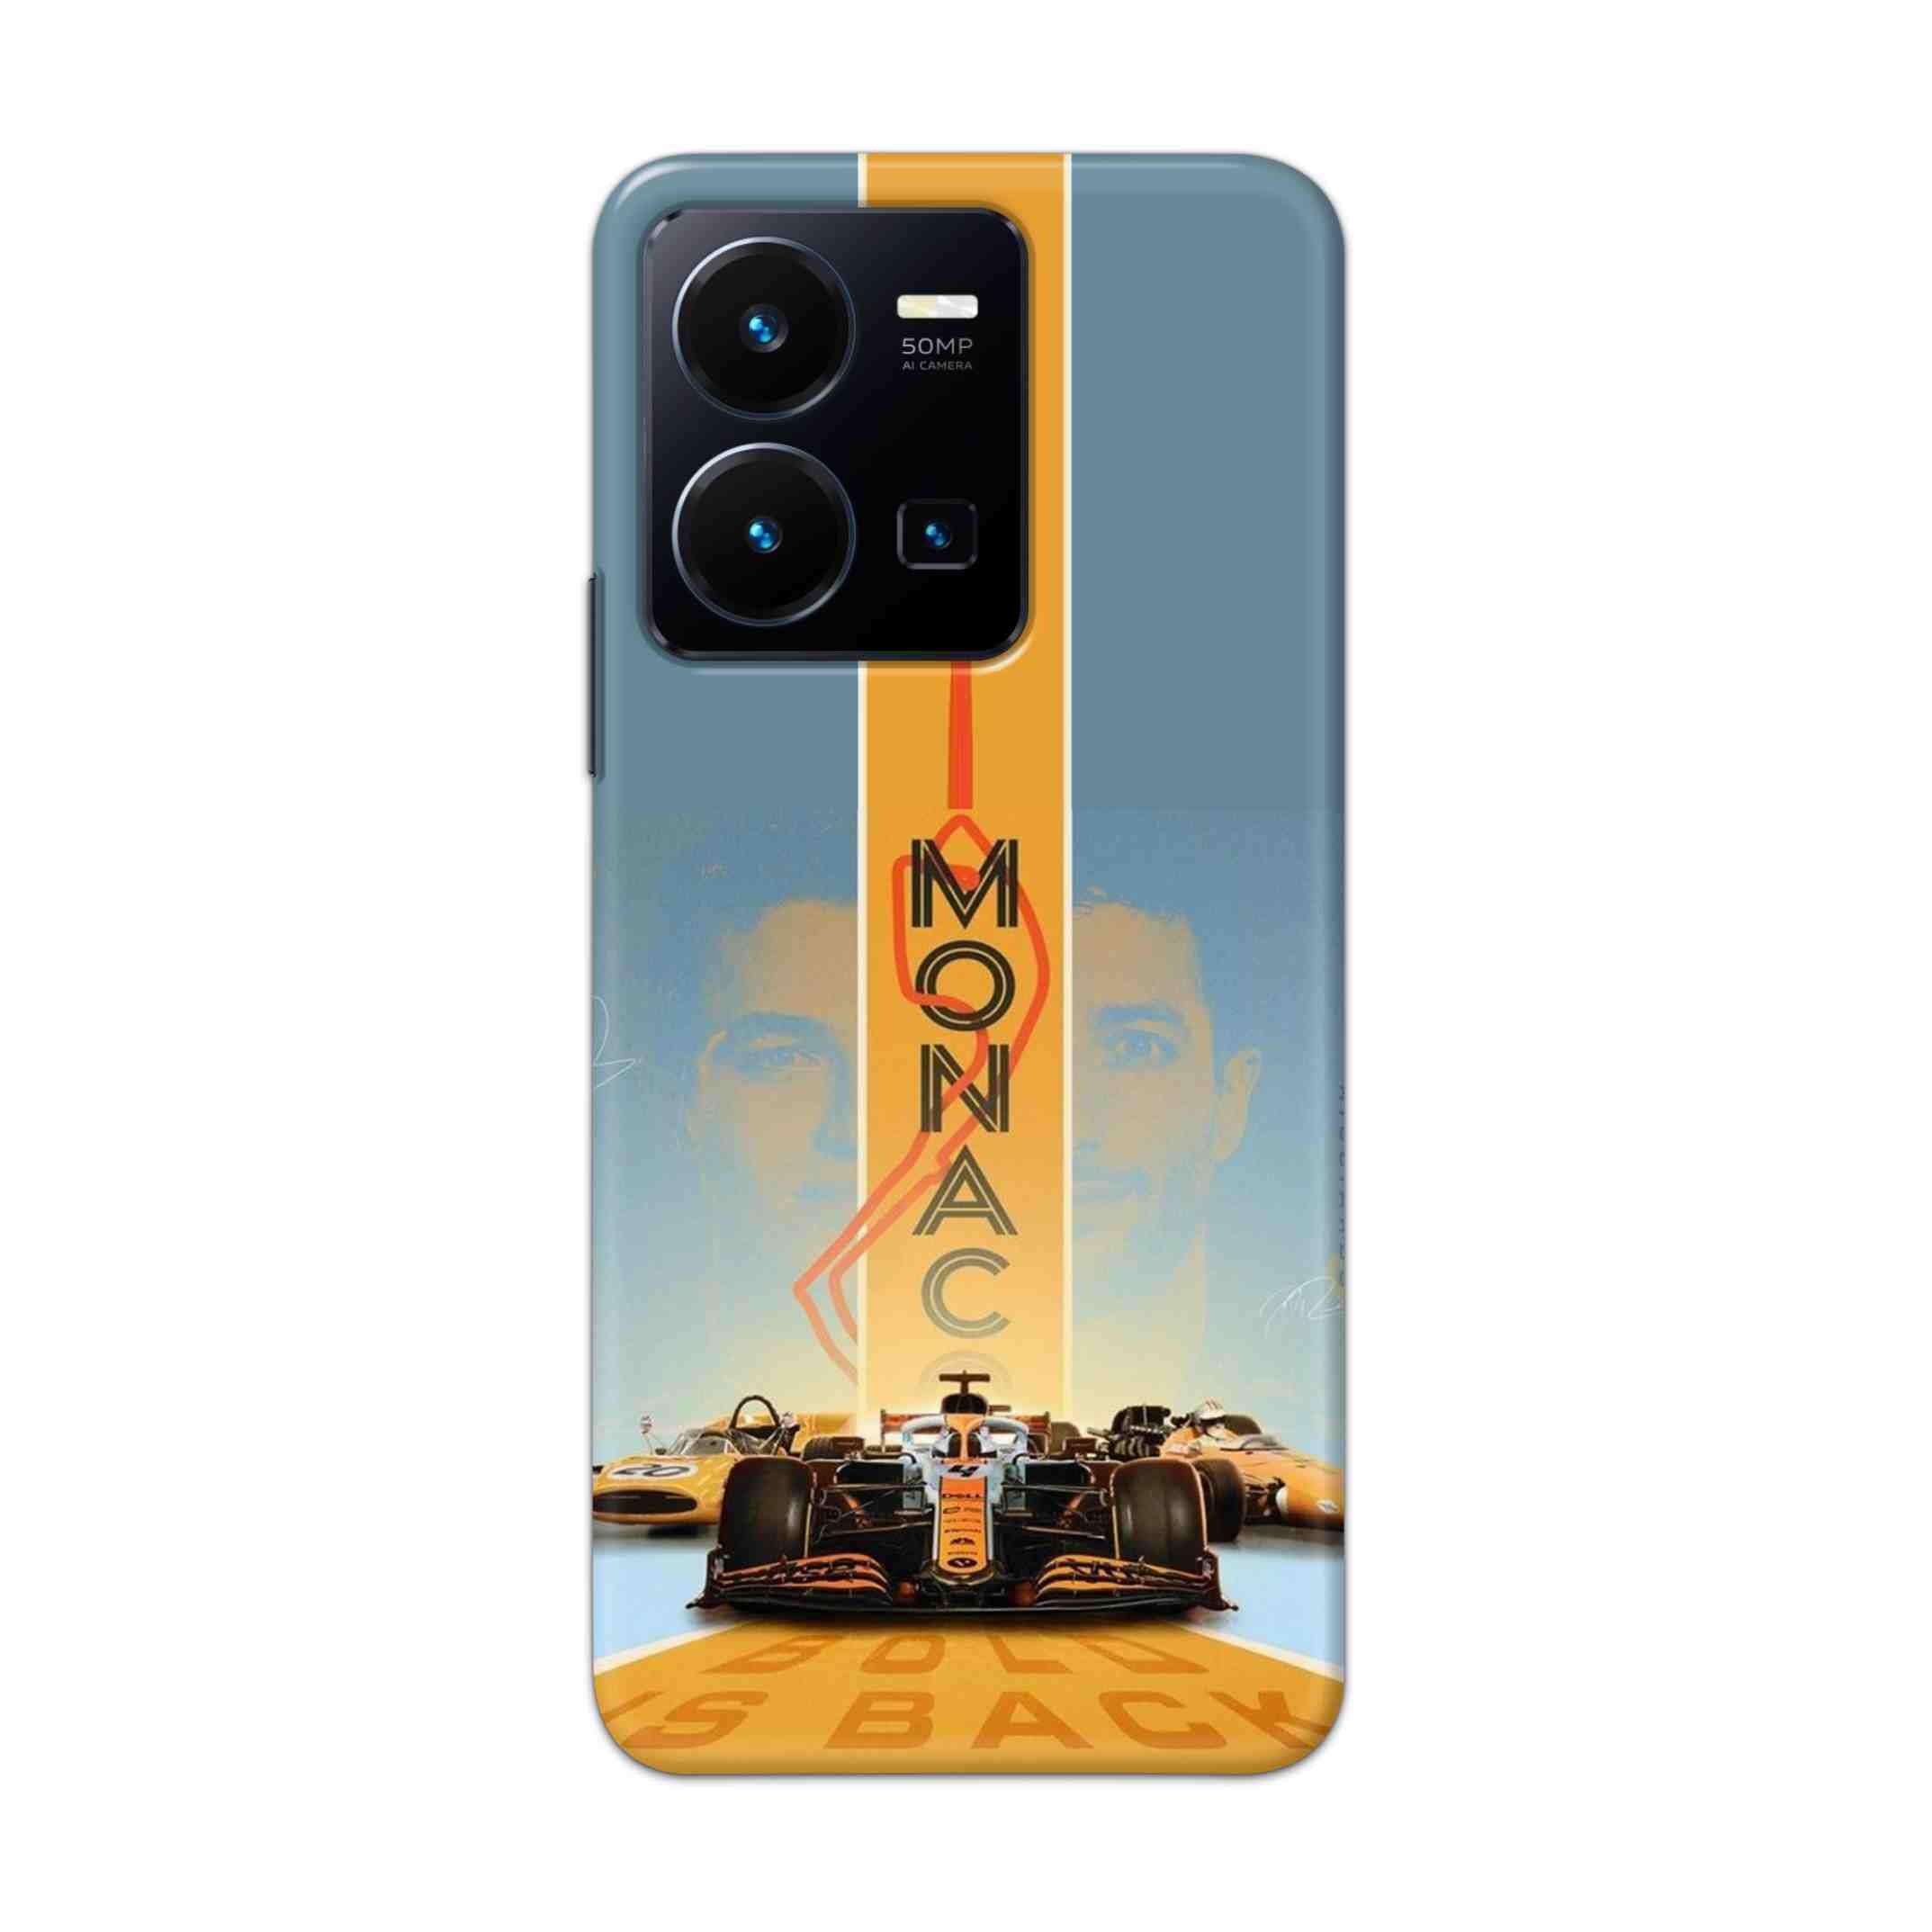 Buy Monac Formula Hard Back Mobile Phone Case Cover For Vivo Y35 2022 Online